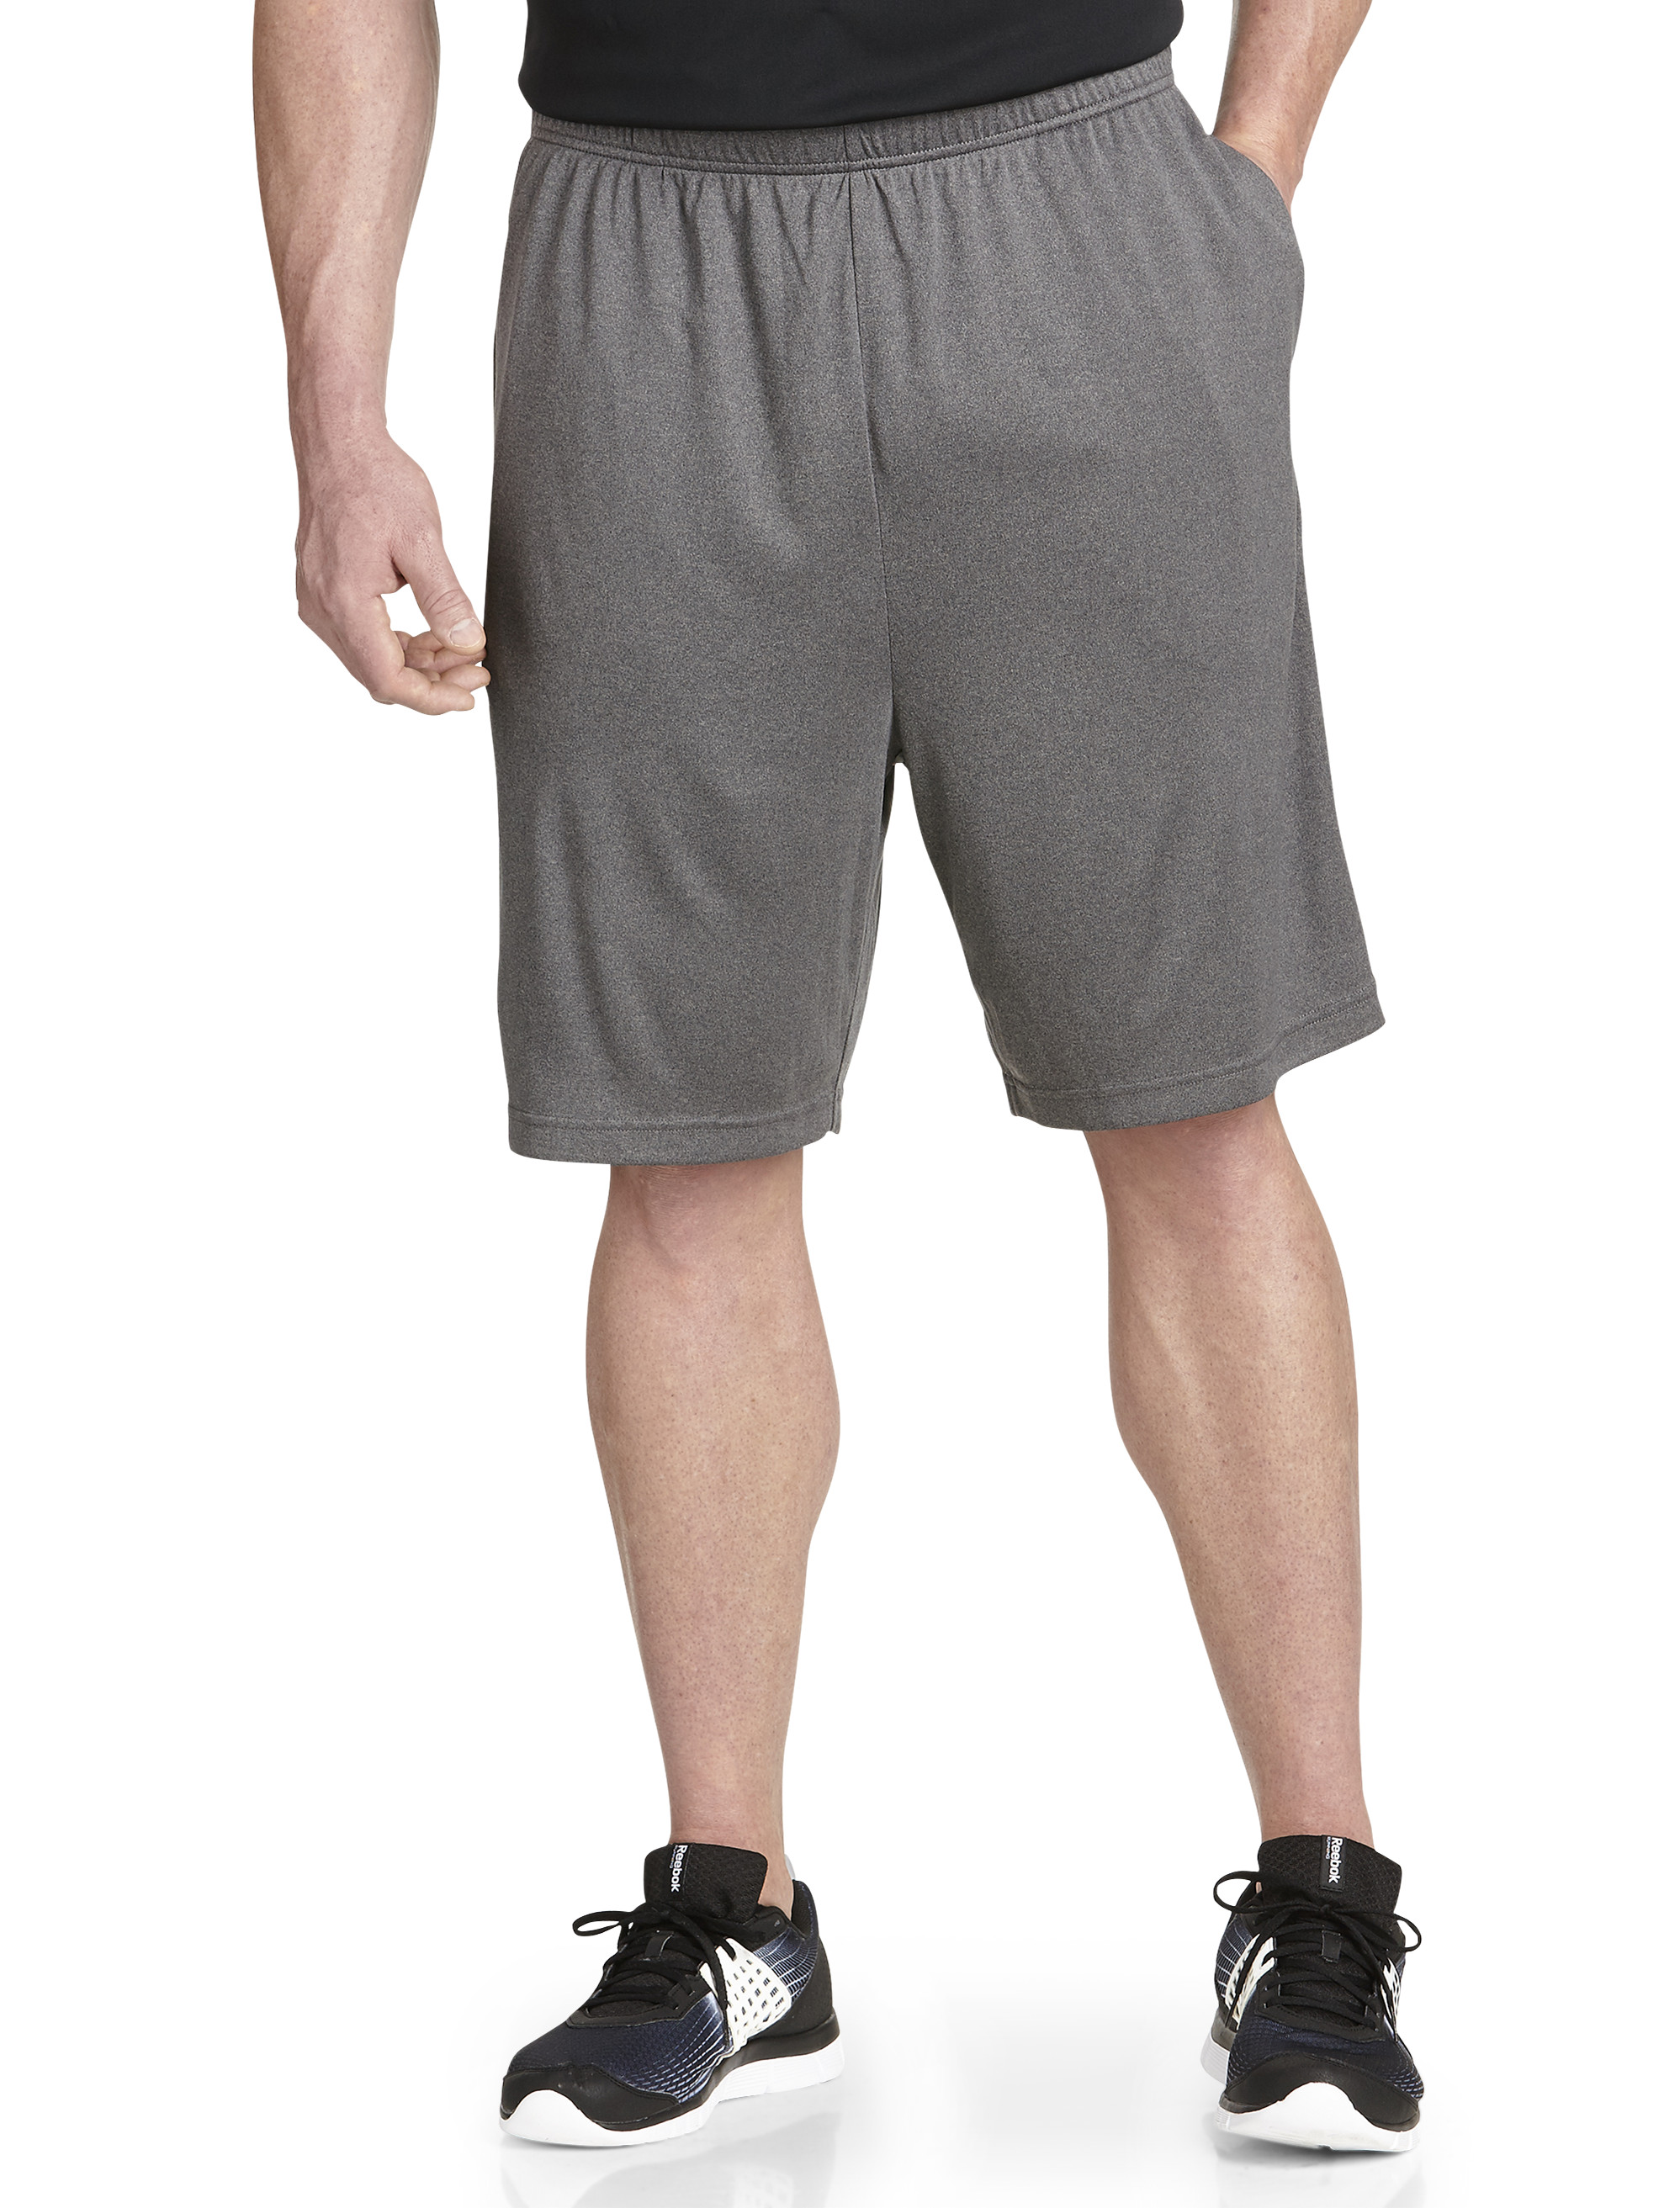 Reebok PlayDry Tech Athletic Shorts Casual Male XL Big & Tall | eBay